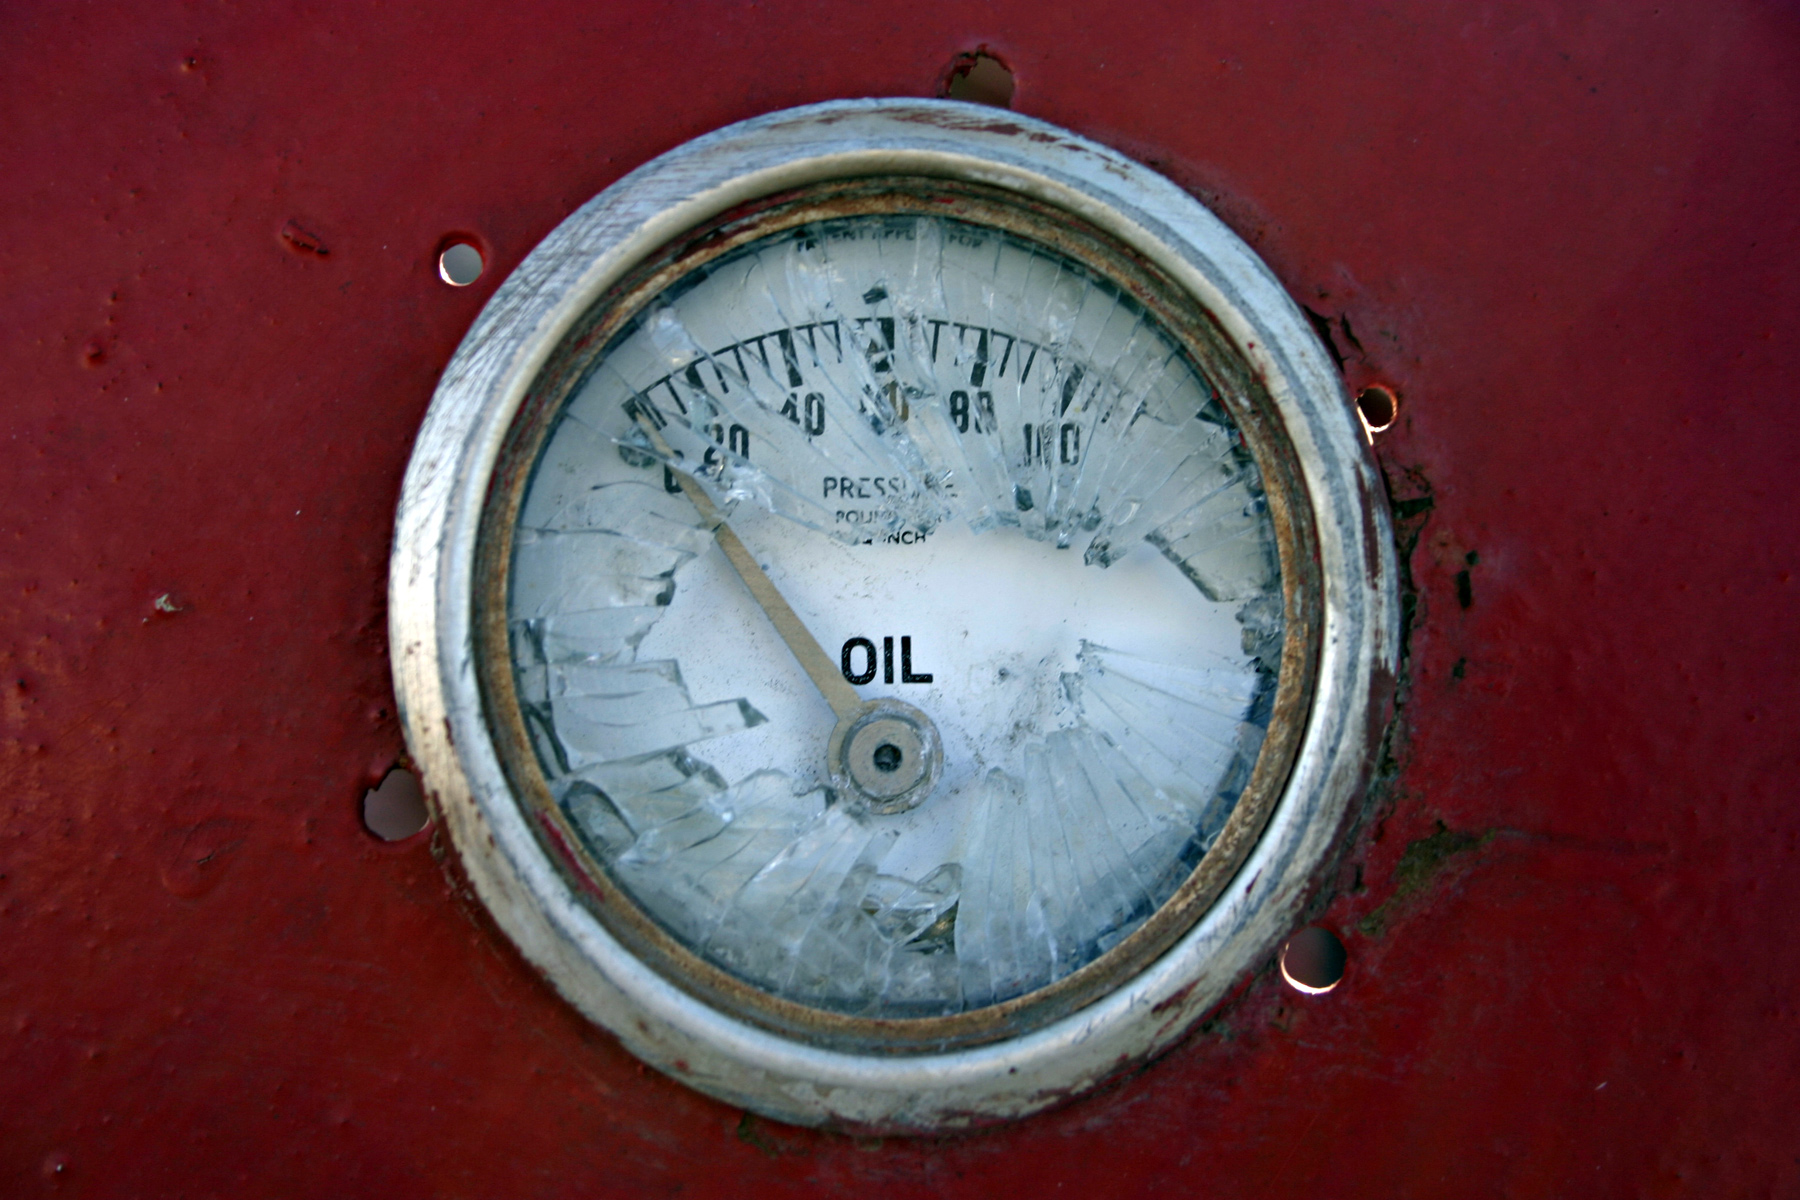 Broken oil meter photo